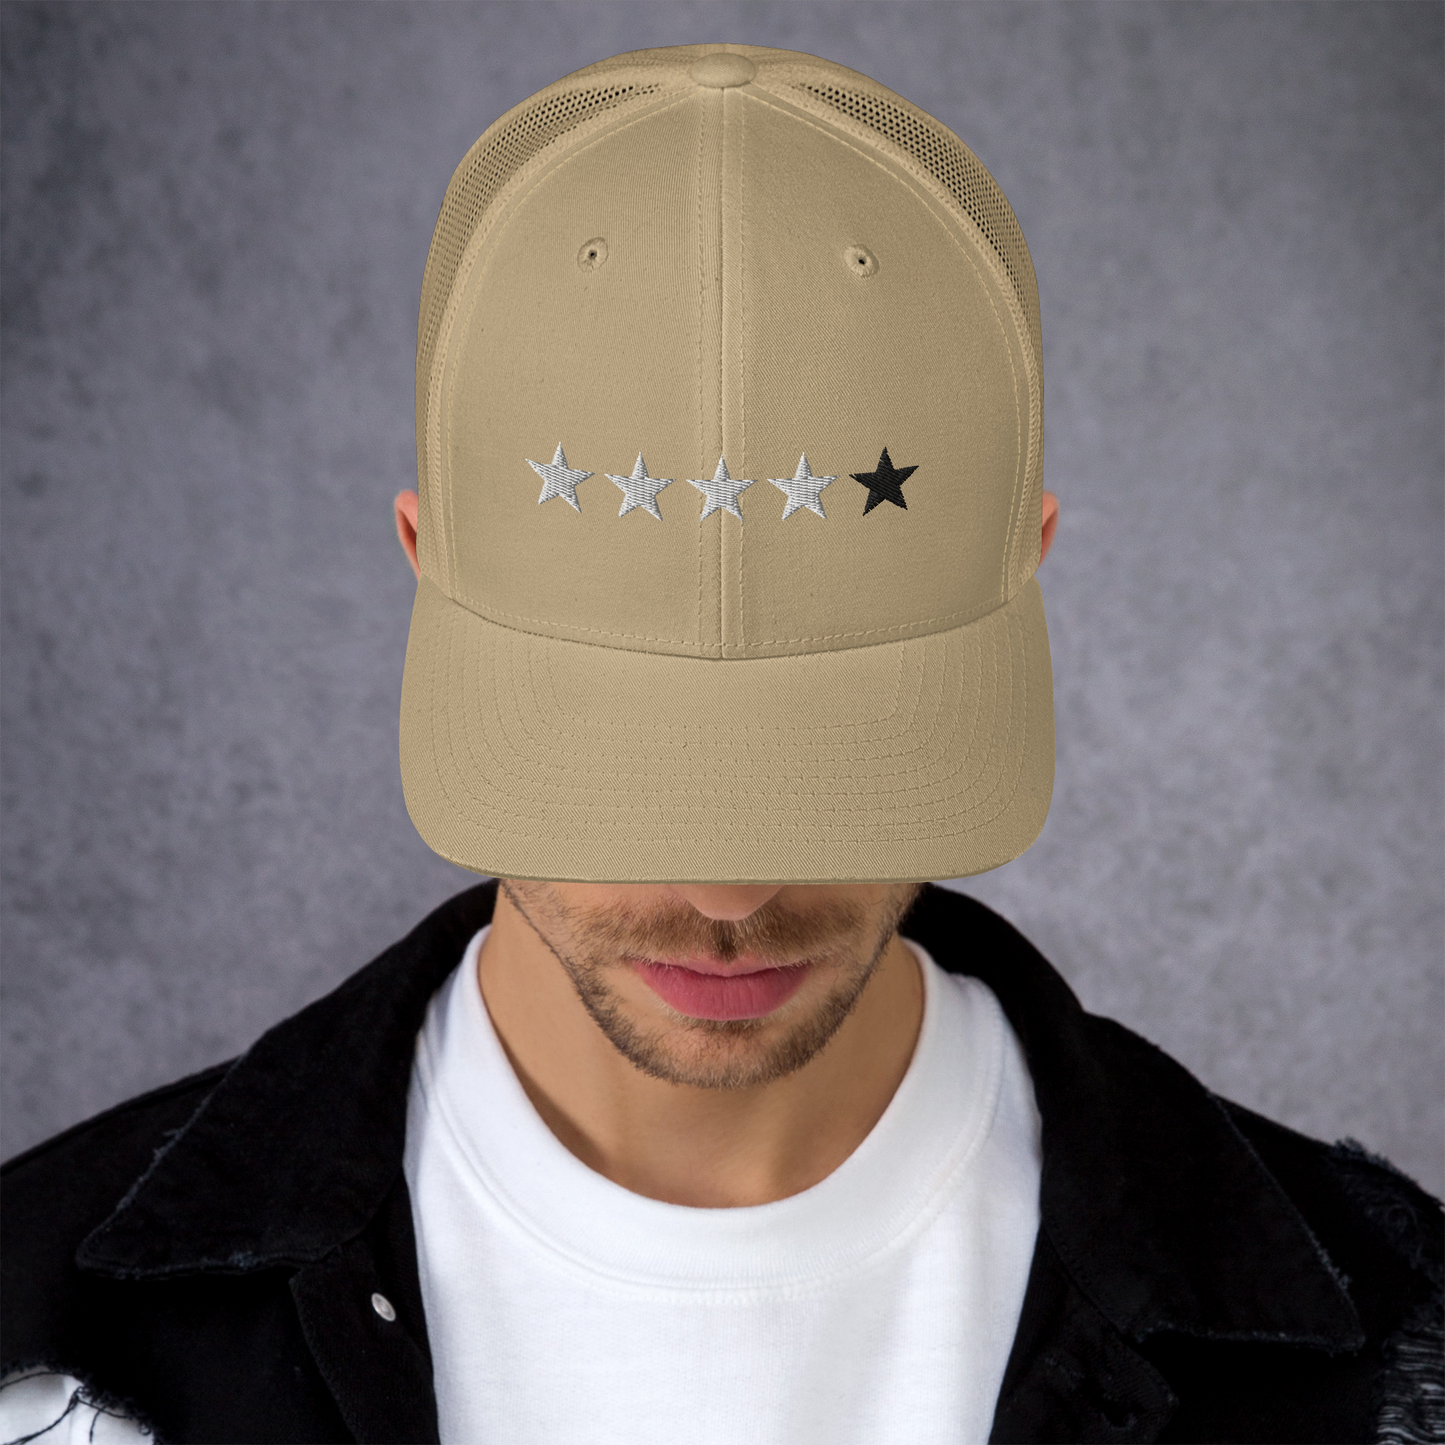 4/5 Stars (Black 5th Star) Trucker Cap, Blk Star